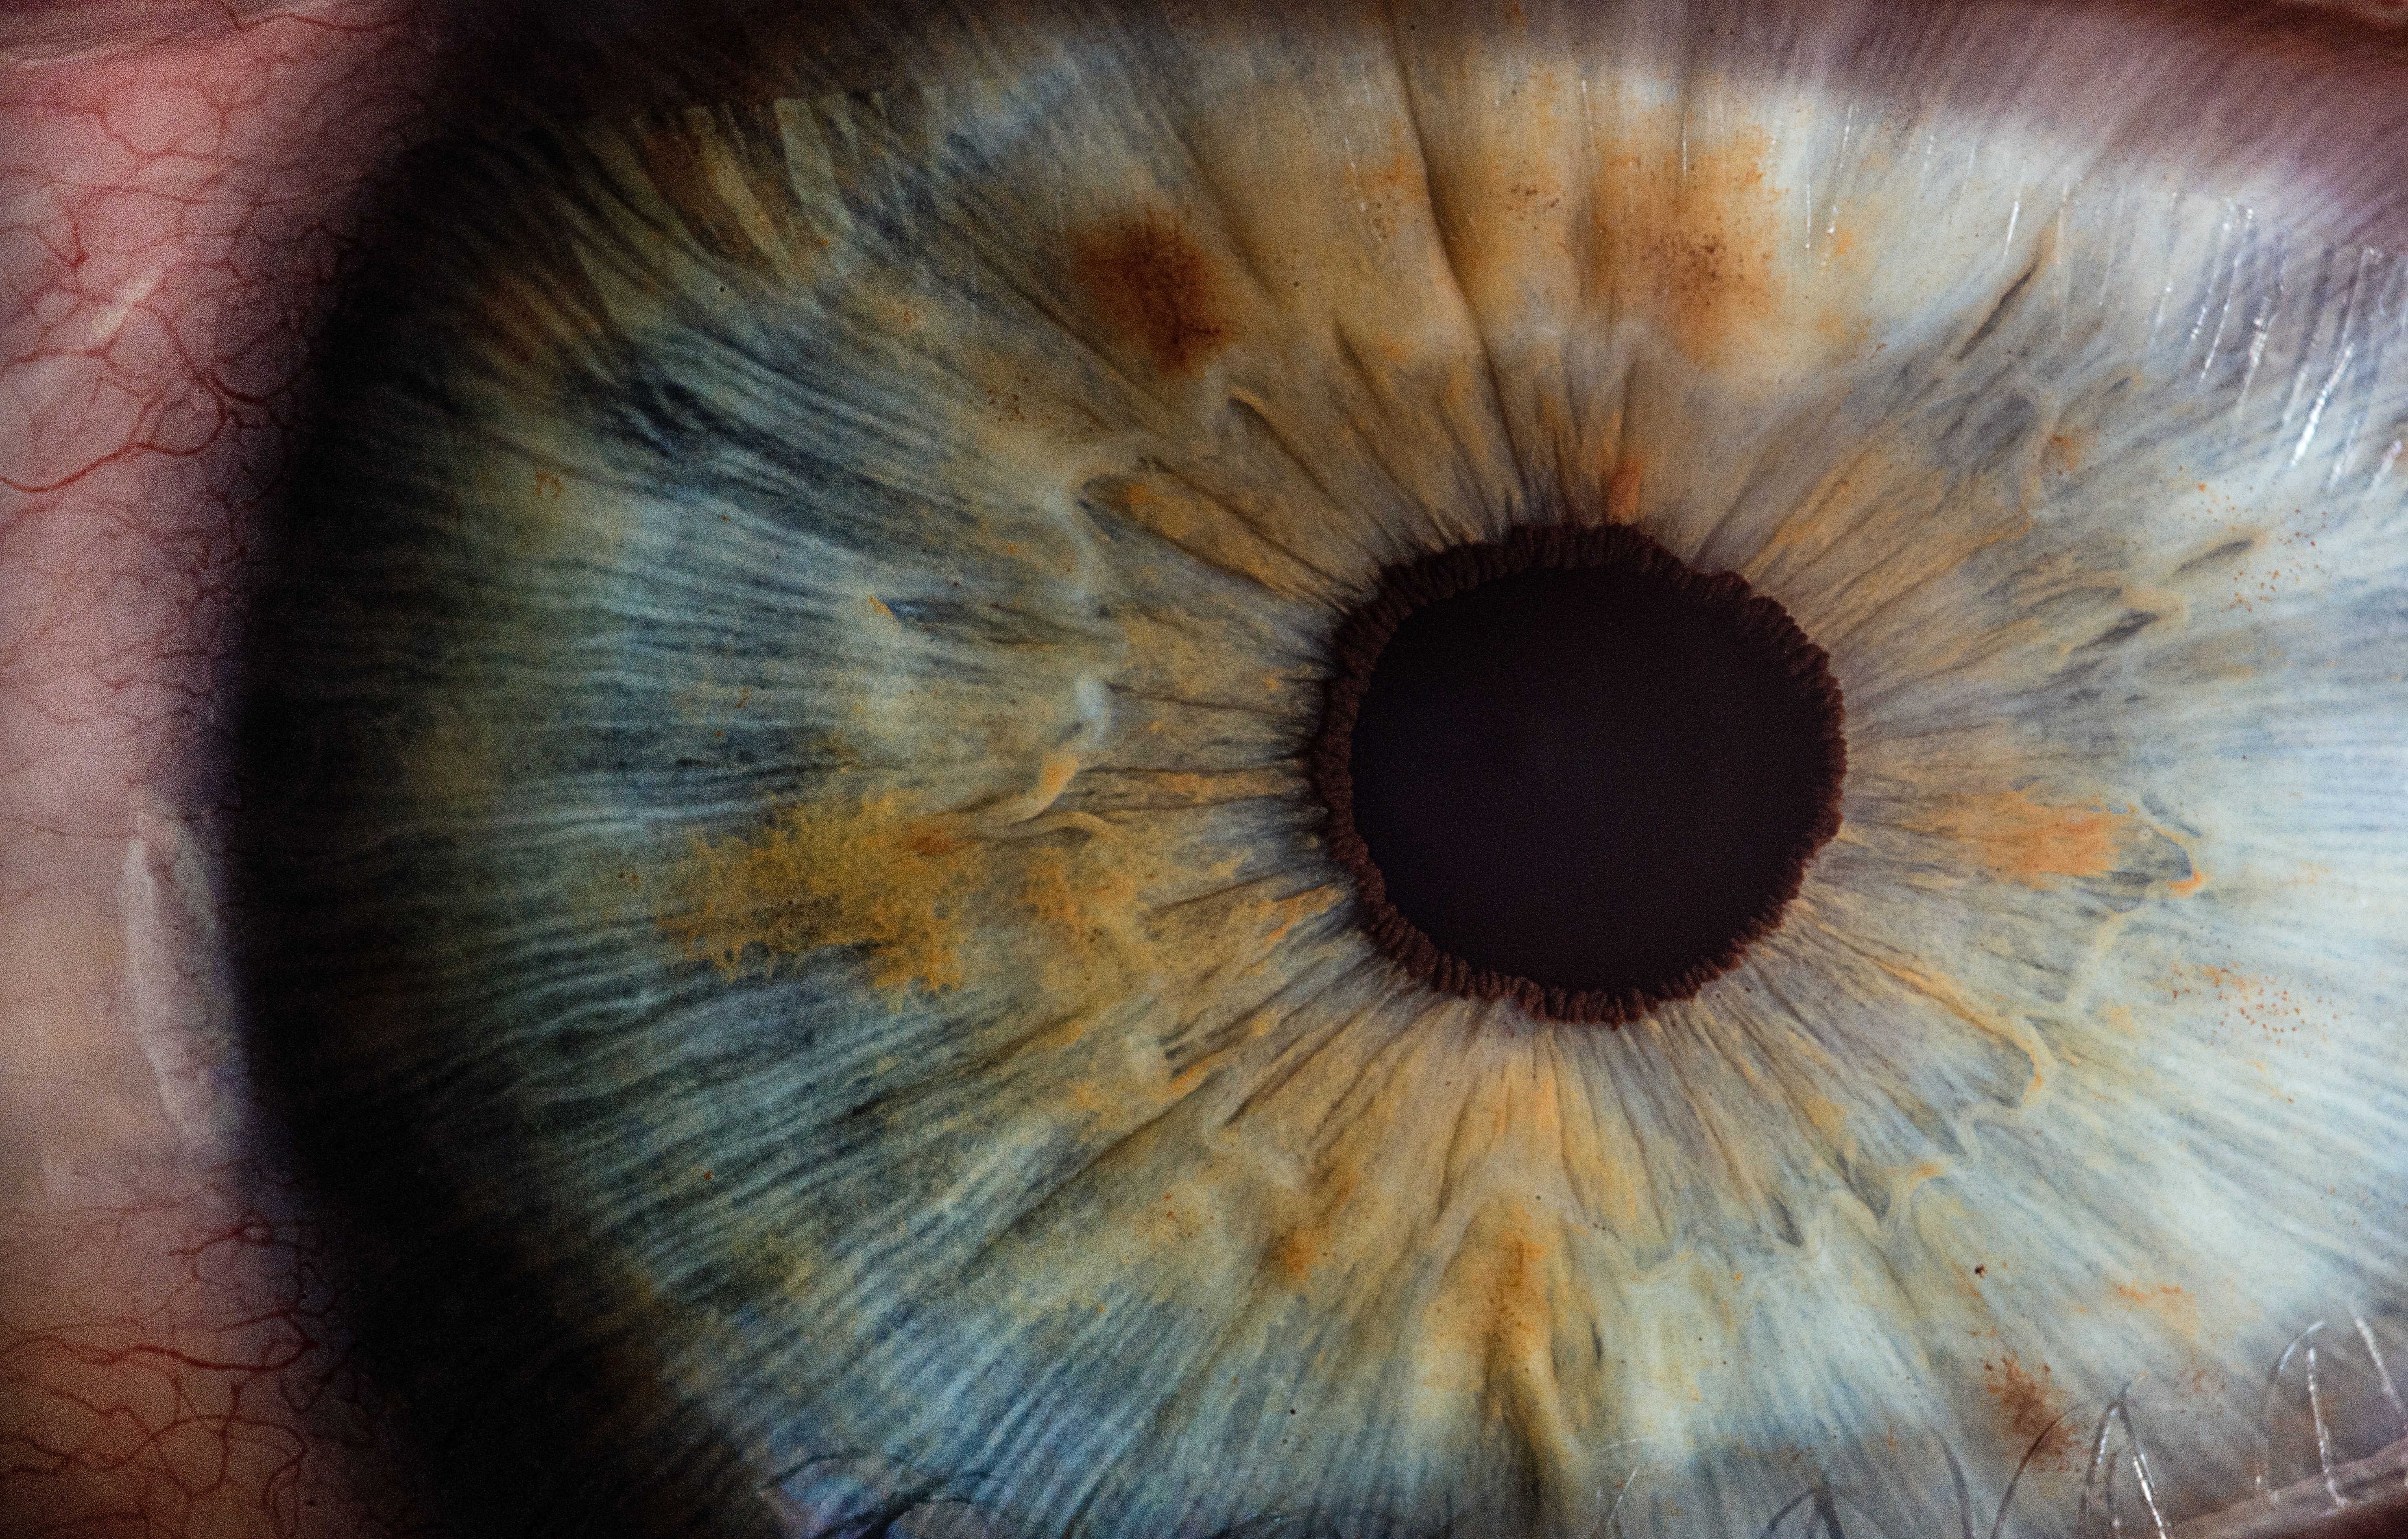 Estudo mostra como experiências traumáticas afetam as pupilas; entenda (Foto: Unsplash)